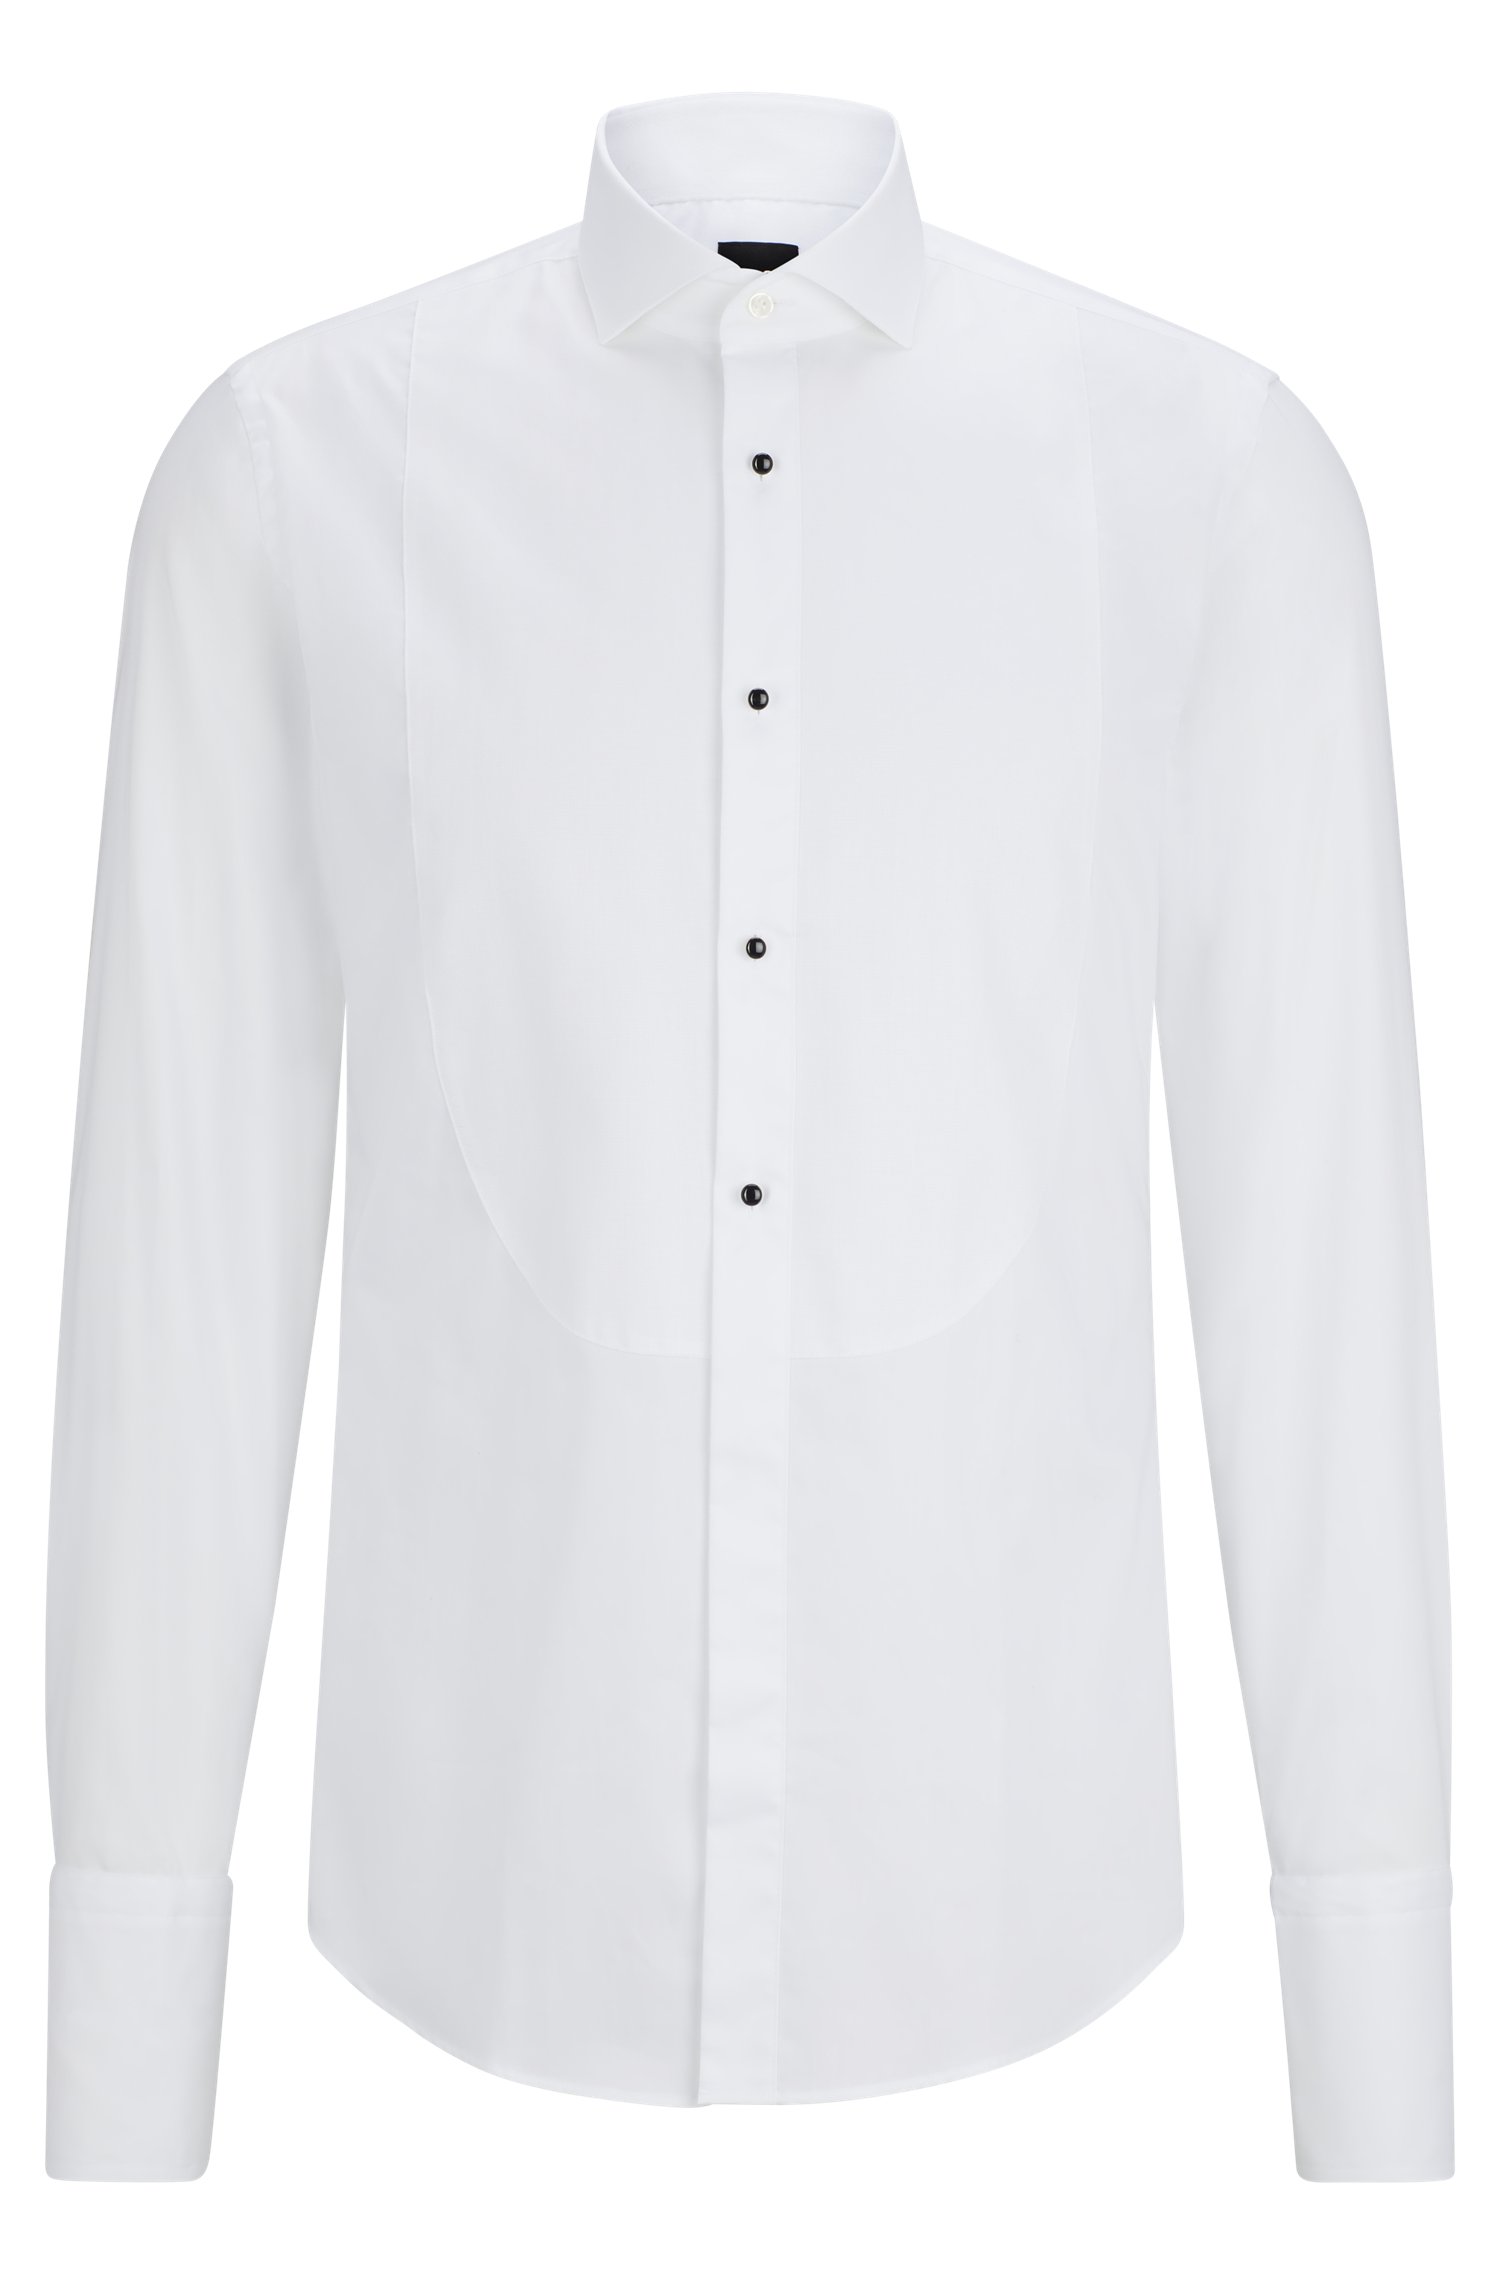 Camisa de vestir slim fit en popelín algodón elástico planchado fácil